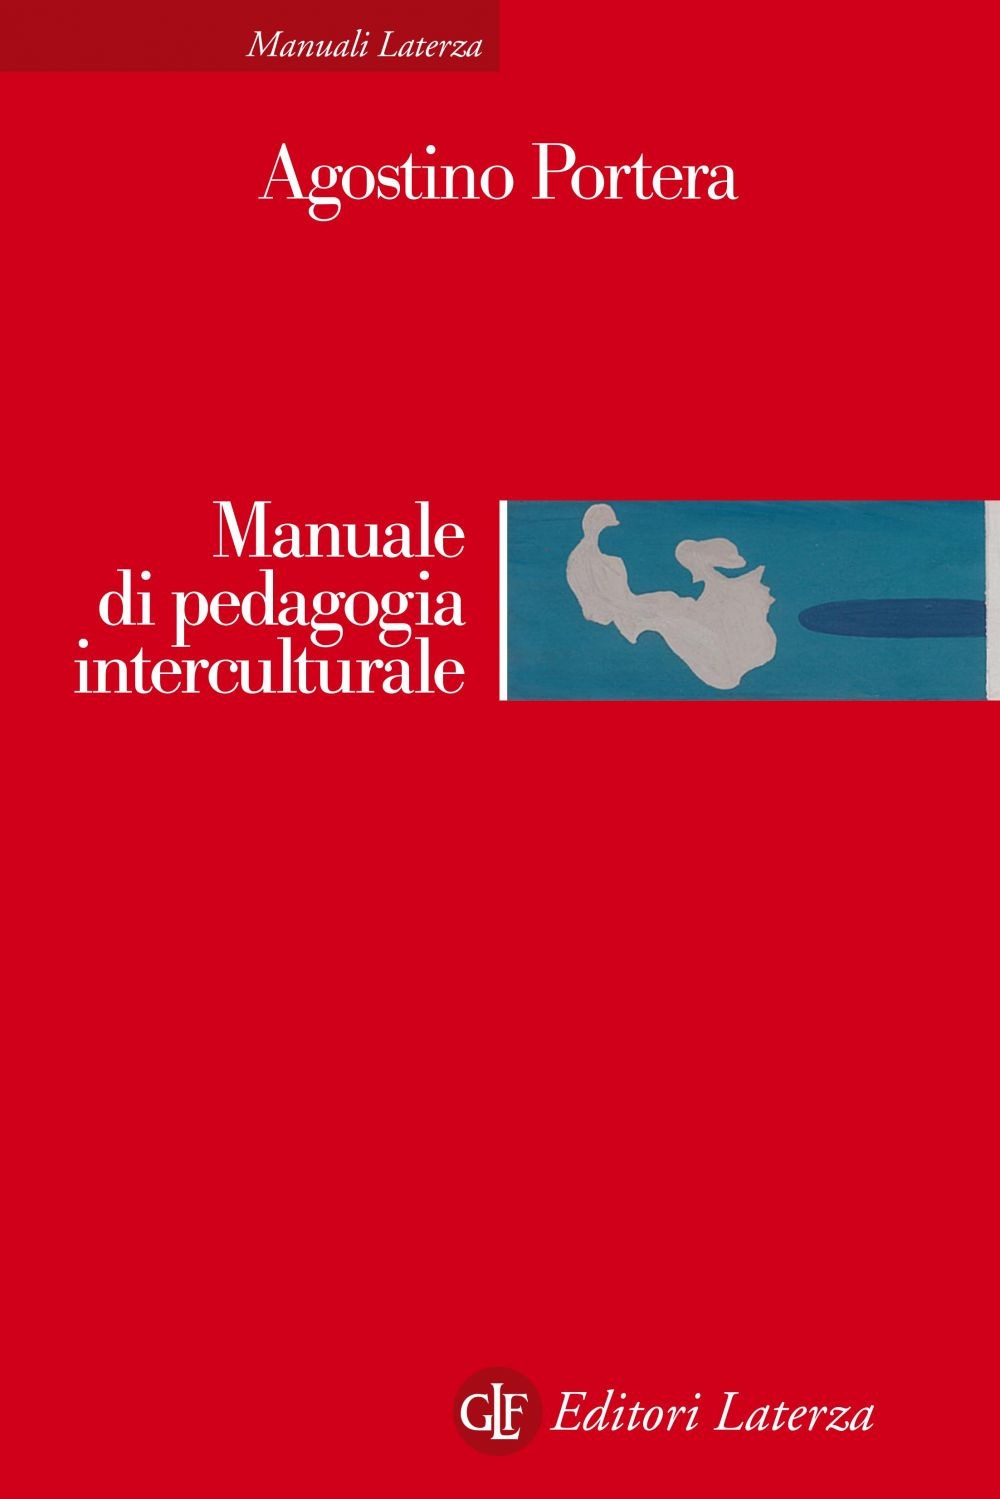 Libri Agostino Portera - Manuale Di Pedagogia Interculturale. Nuova Ediz. NUOVO SIGILLATO, EDIZIONE DEL 19/03/2020 SUBITO DISPONIBILE